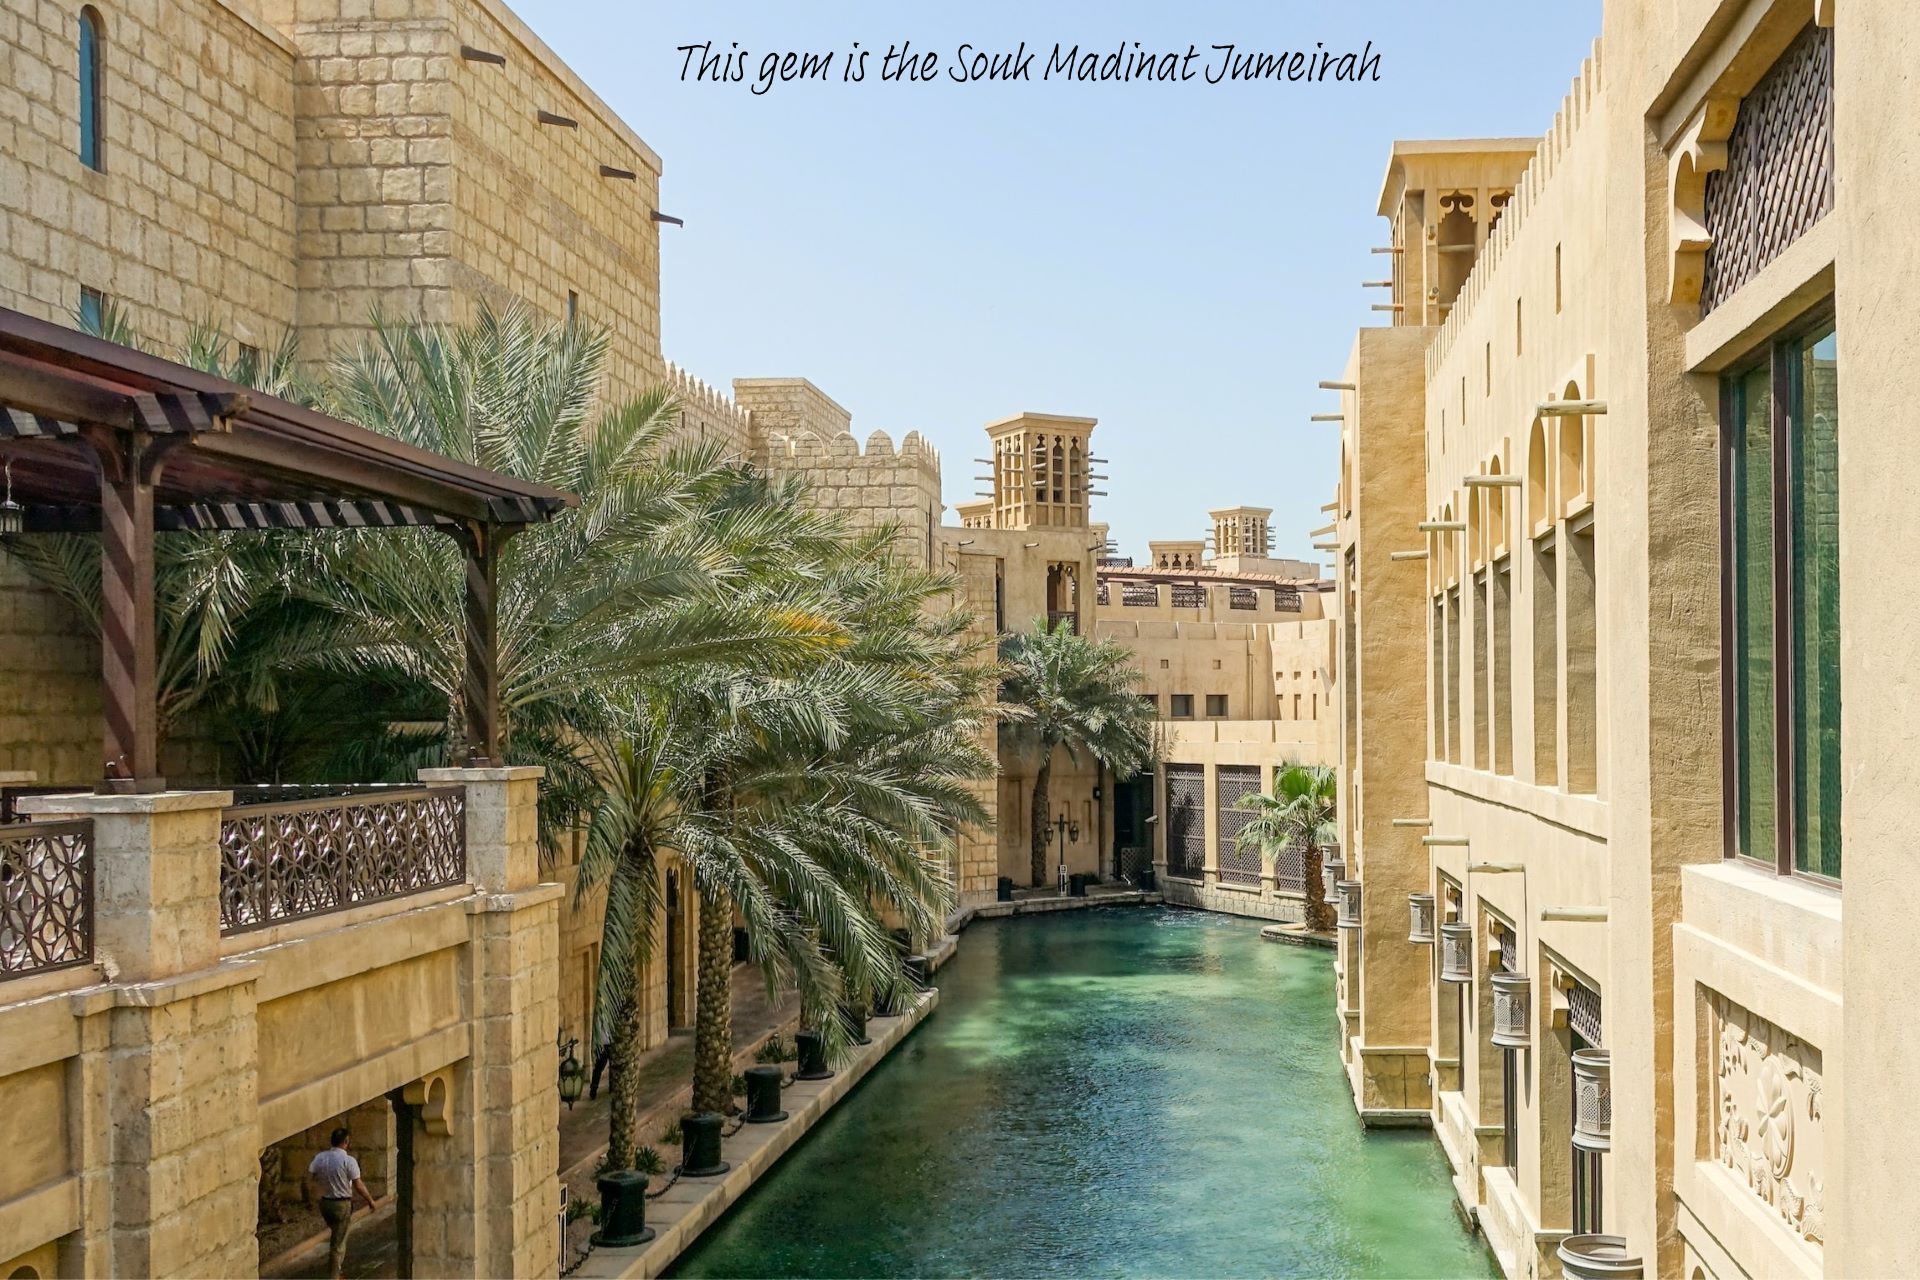 The Souk Madinat Jumeirah in Dubai.